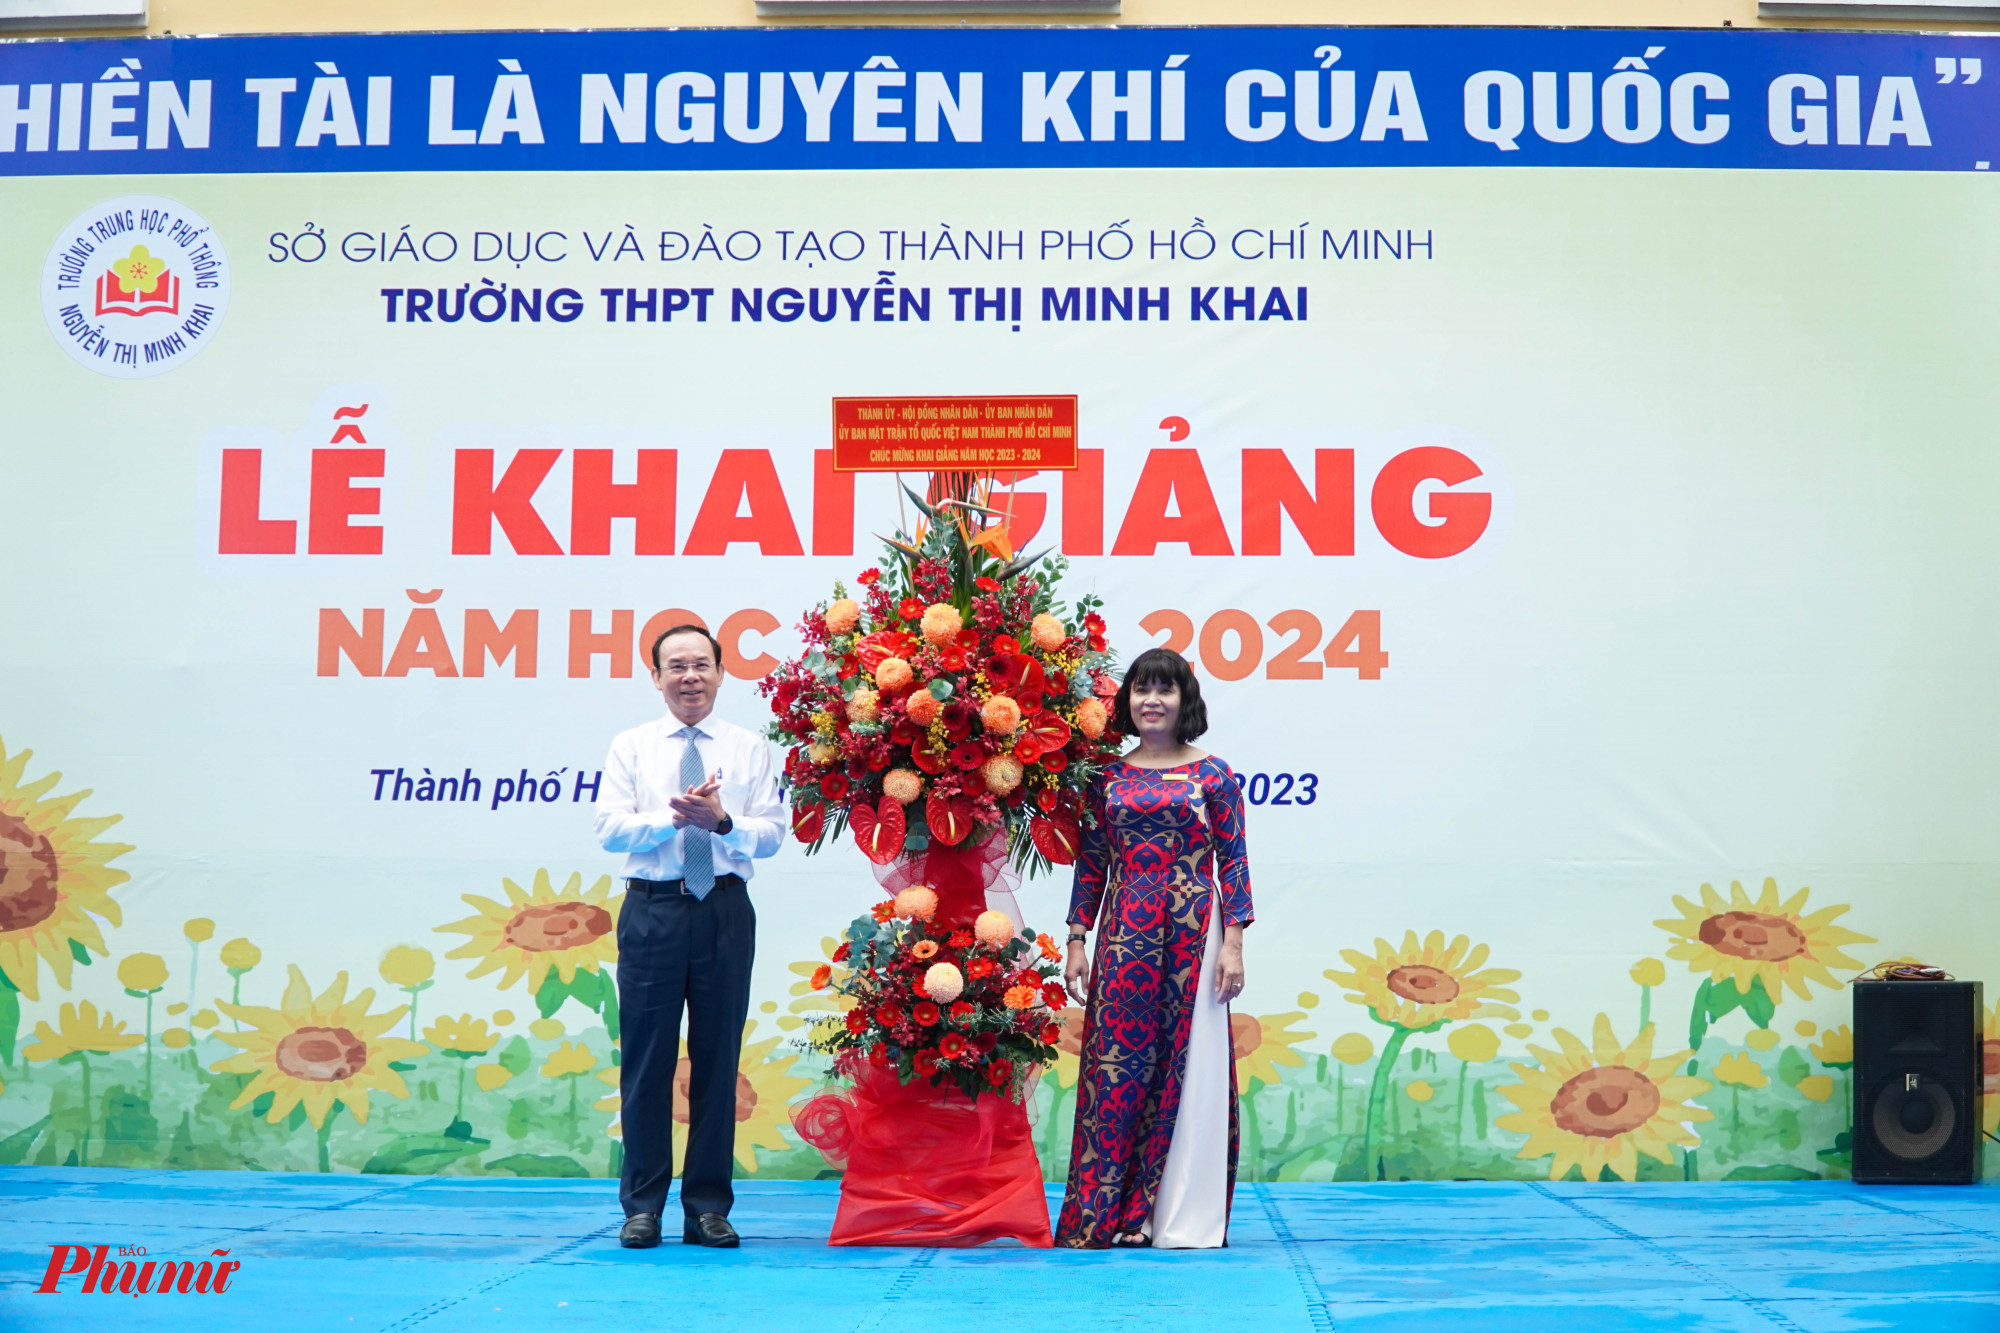 Bí thư Thành ủy Nguyễn Văn Nên tặng hoa chúc mùng ngày khai giảng đến trường THPT Nguyễn Thị Minh Khai